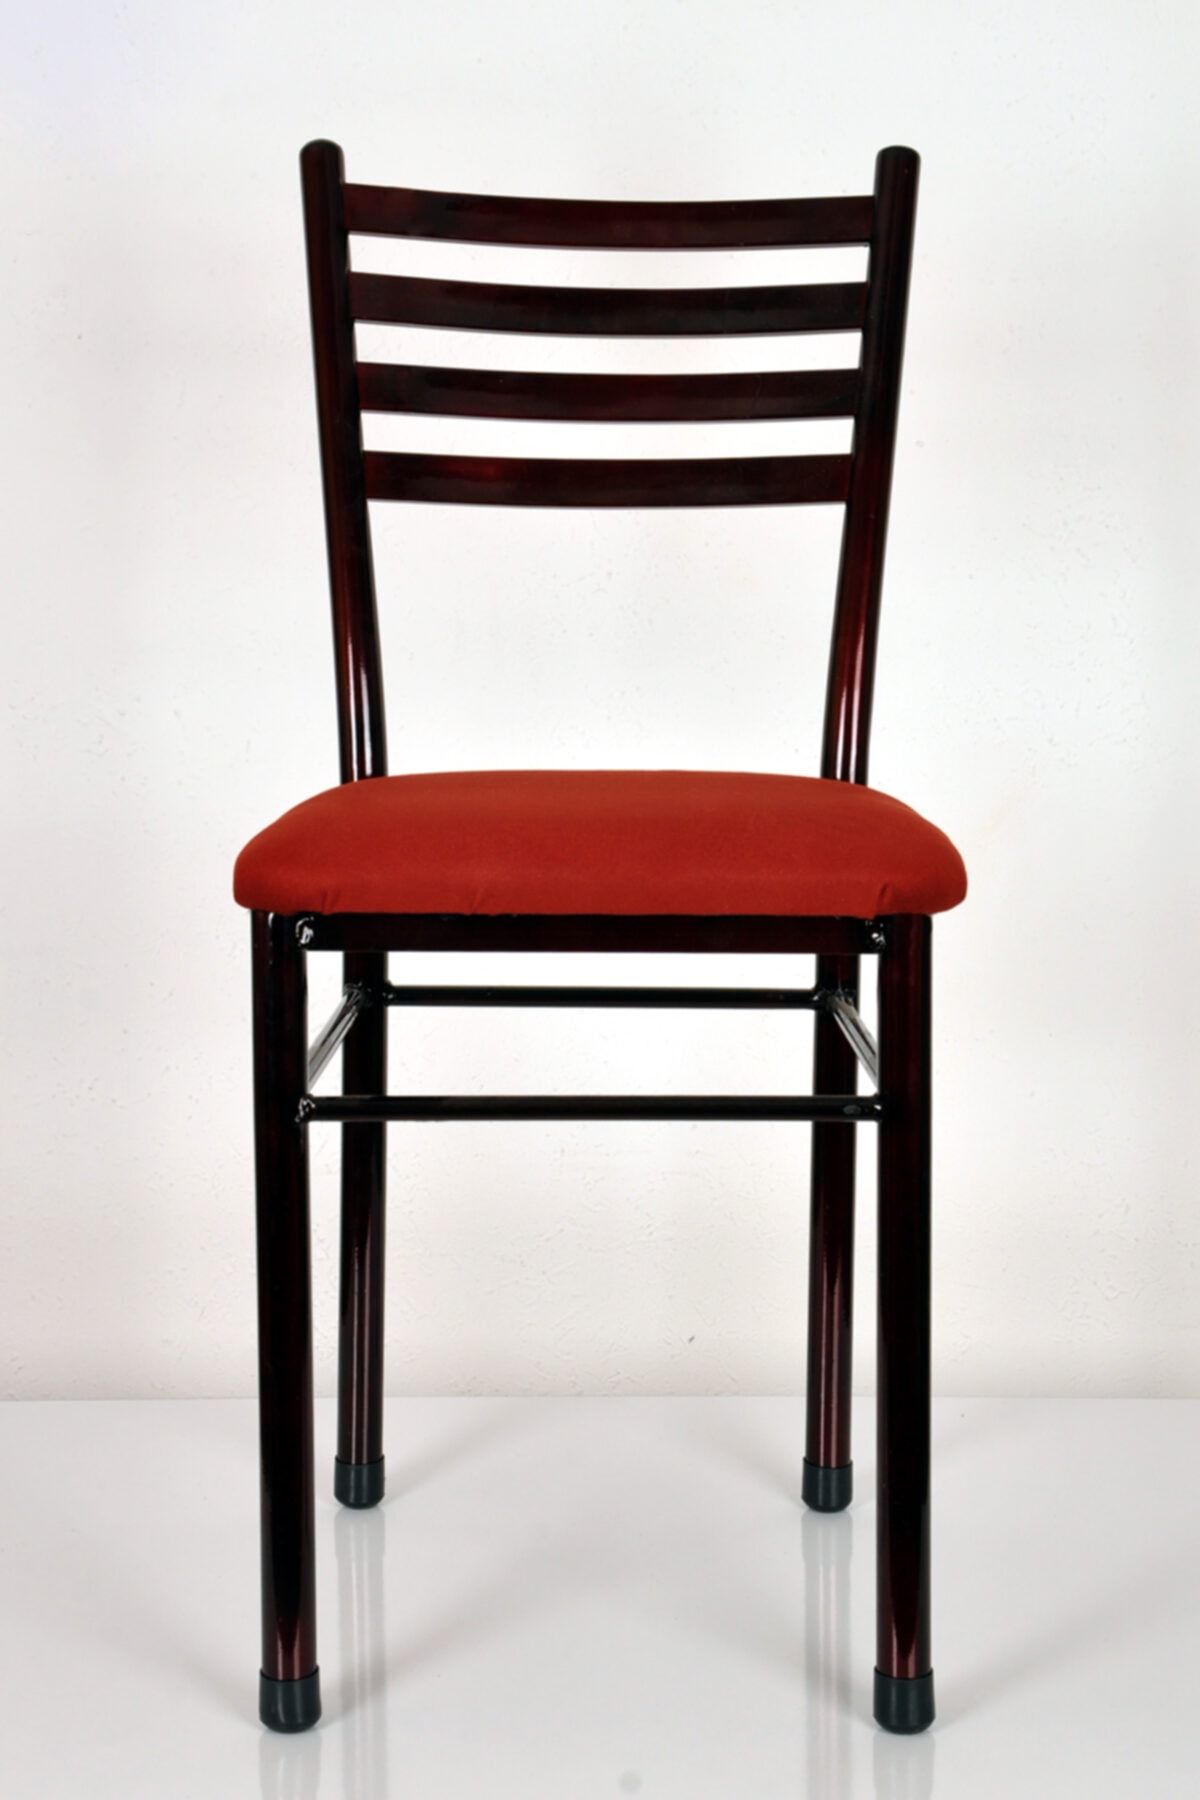 yılmaz masacılık 3 Adet Bordo Metal Mutfak Sandalyesi Demir Sandalye Retro Sandalye